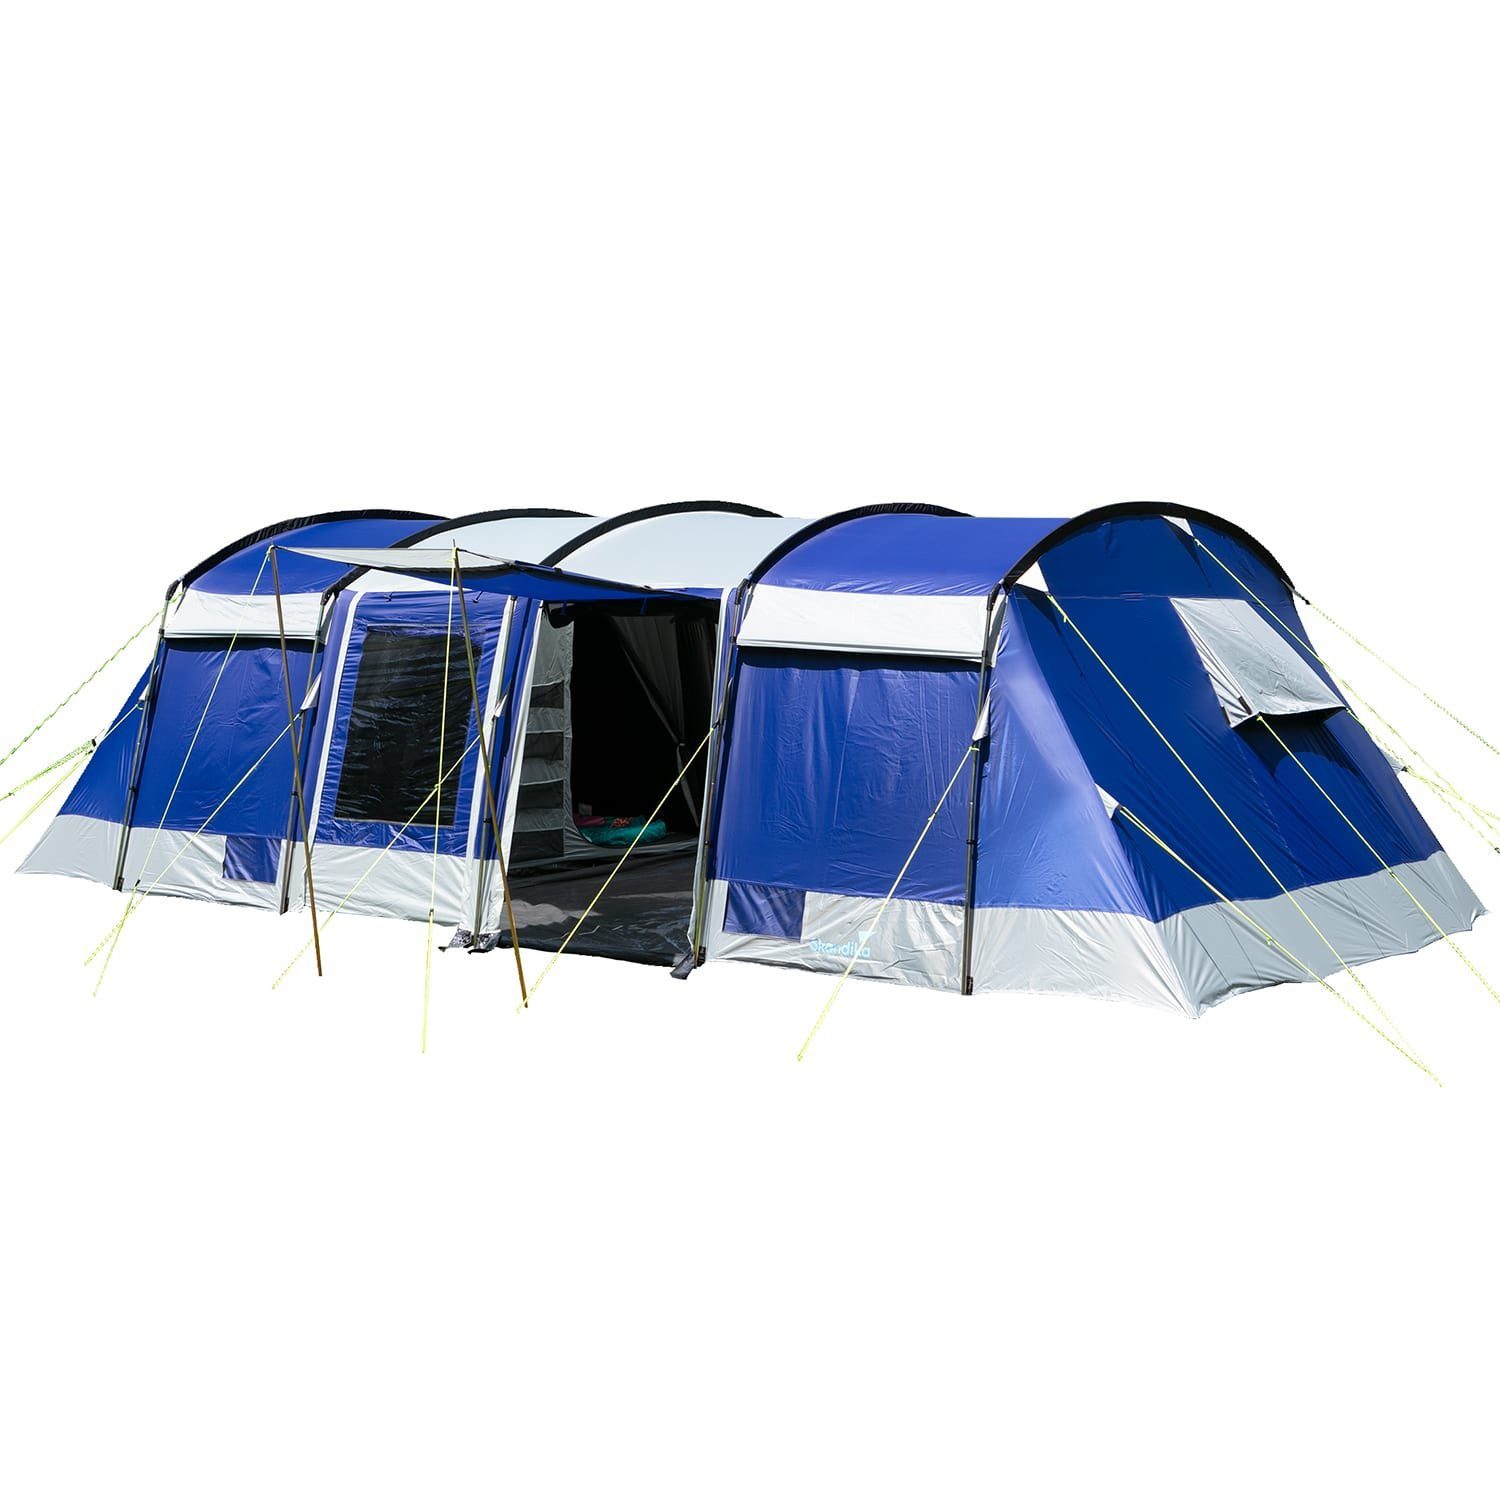 Skandika Tunnelzelt »Montana 10 Sleeper (blau)«, für 10 Personen, Camping  Zelt mit Sleeper Technologie, Schwarze und dunkle Schlafkabinen,  wasserdicht, 5000 mm Wassersäule, Moskitonetz, 4 Eingänge, Familienzelt  online kaufen | OTTO